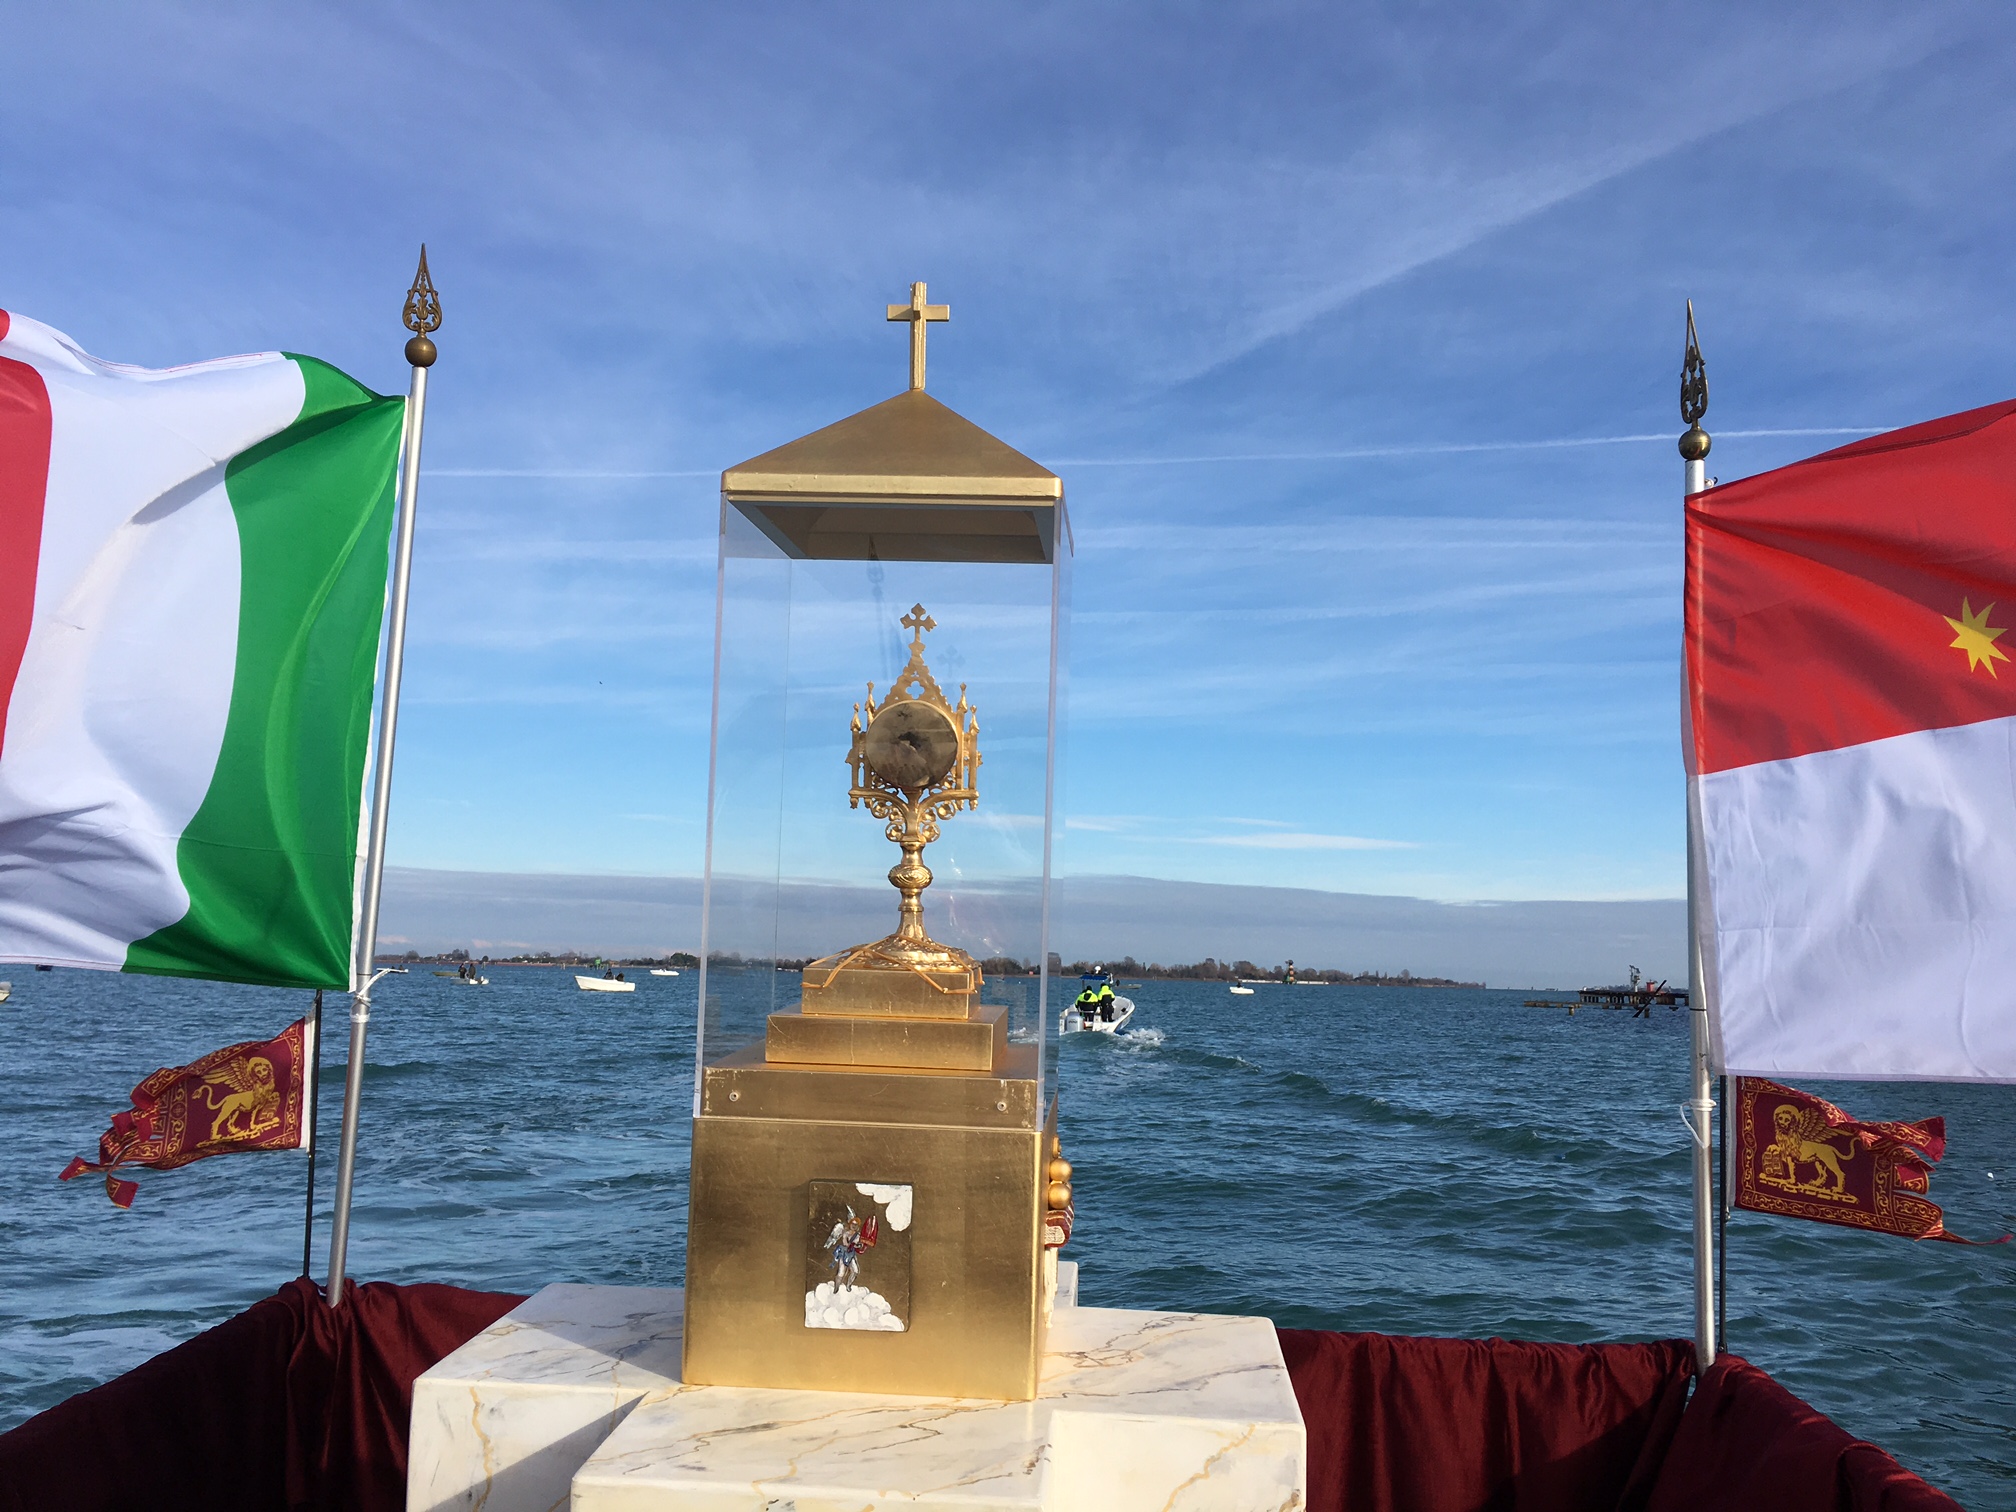 La Traslazione della Reliquia di San Nicolò con il viaggio da Venezia a Motta di Livenza